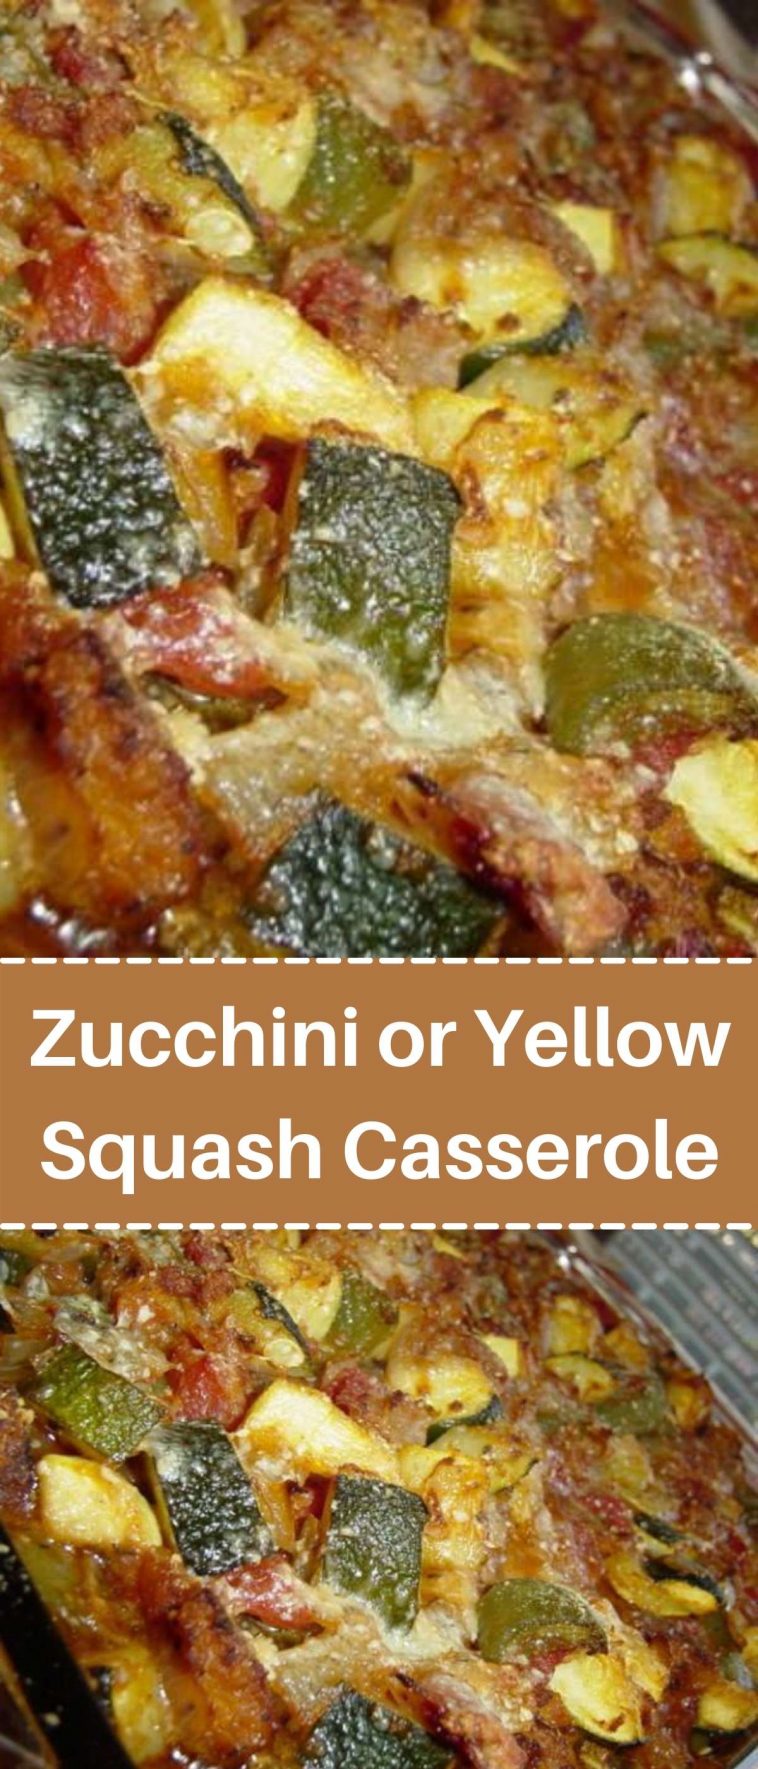 Zucchini or Yellow Squash Casserole